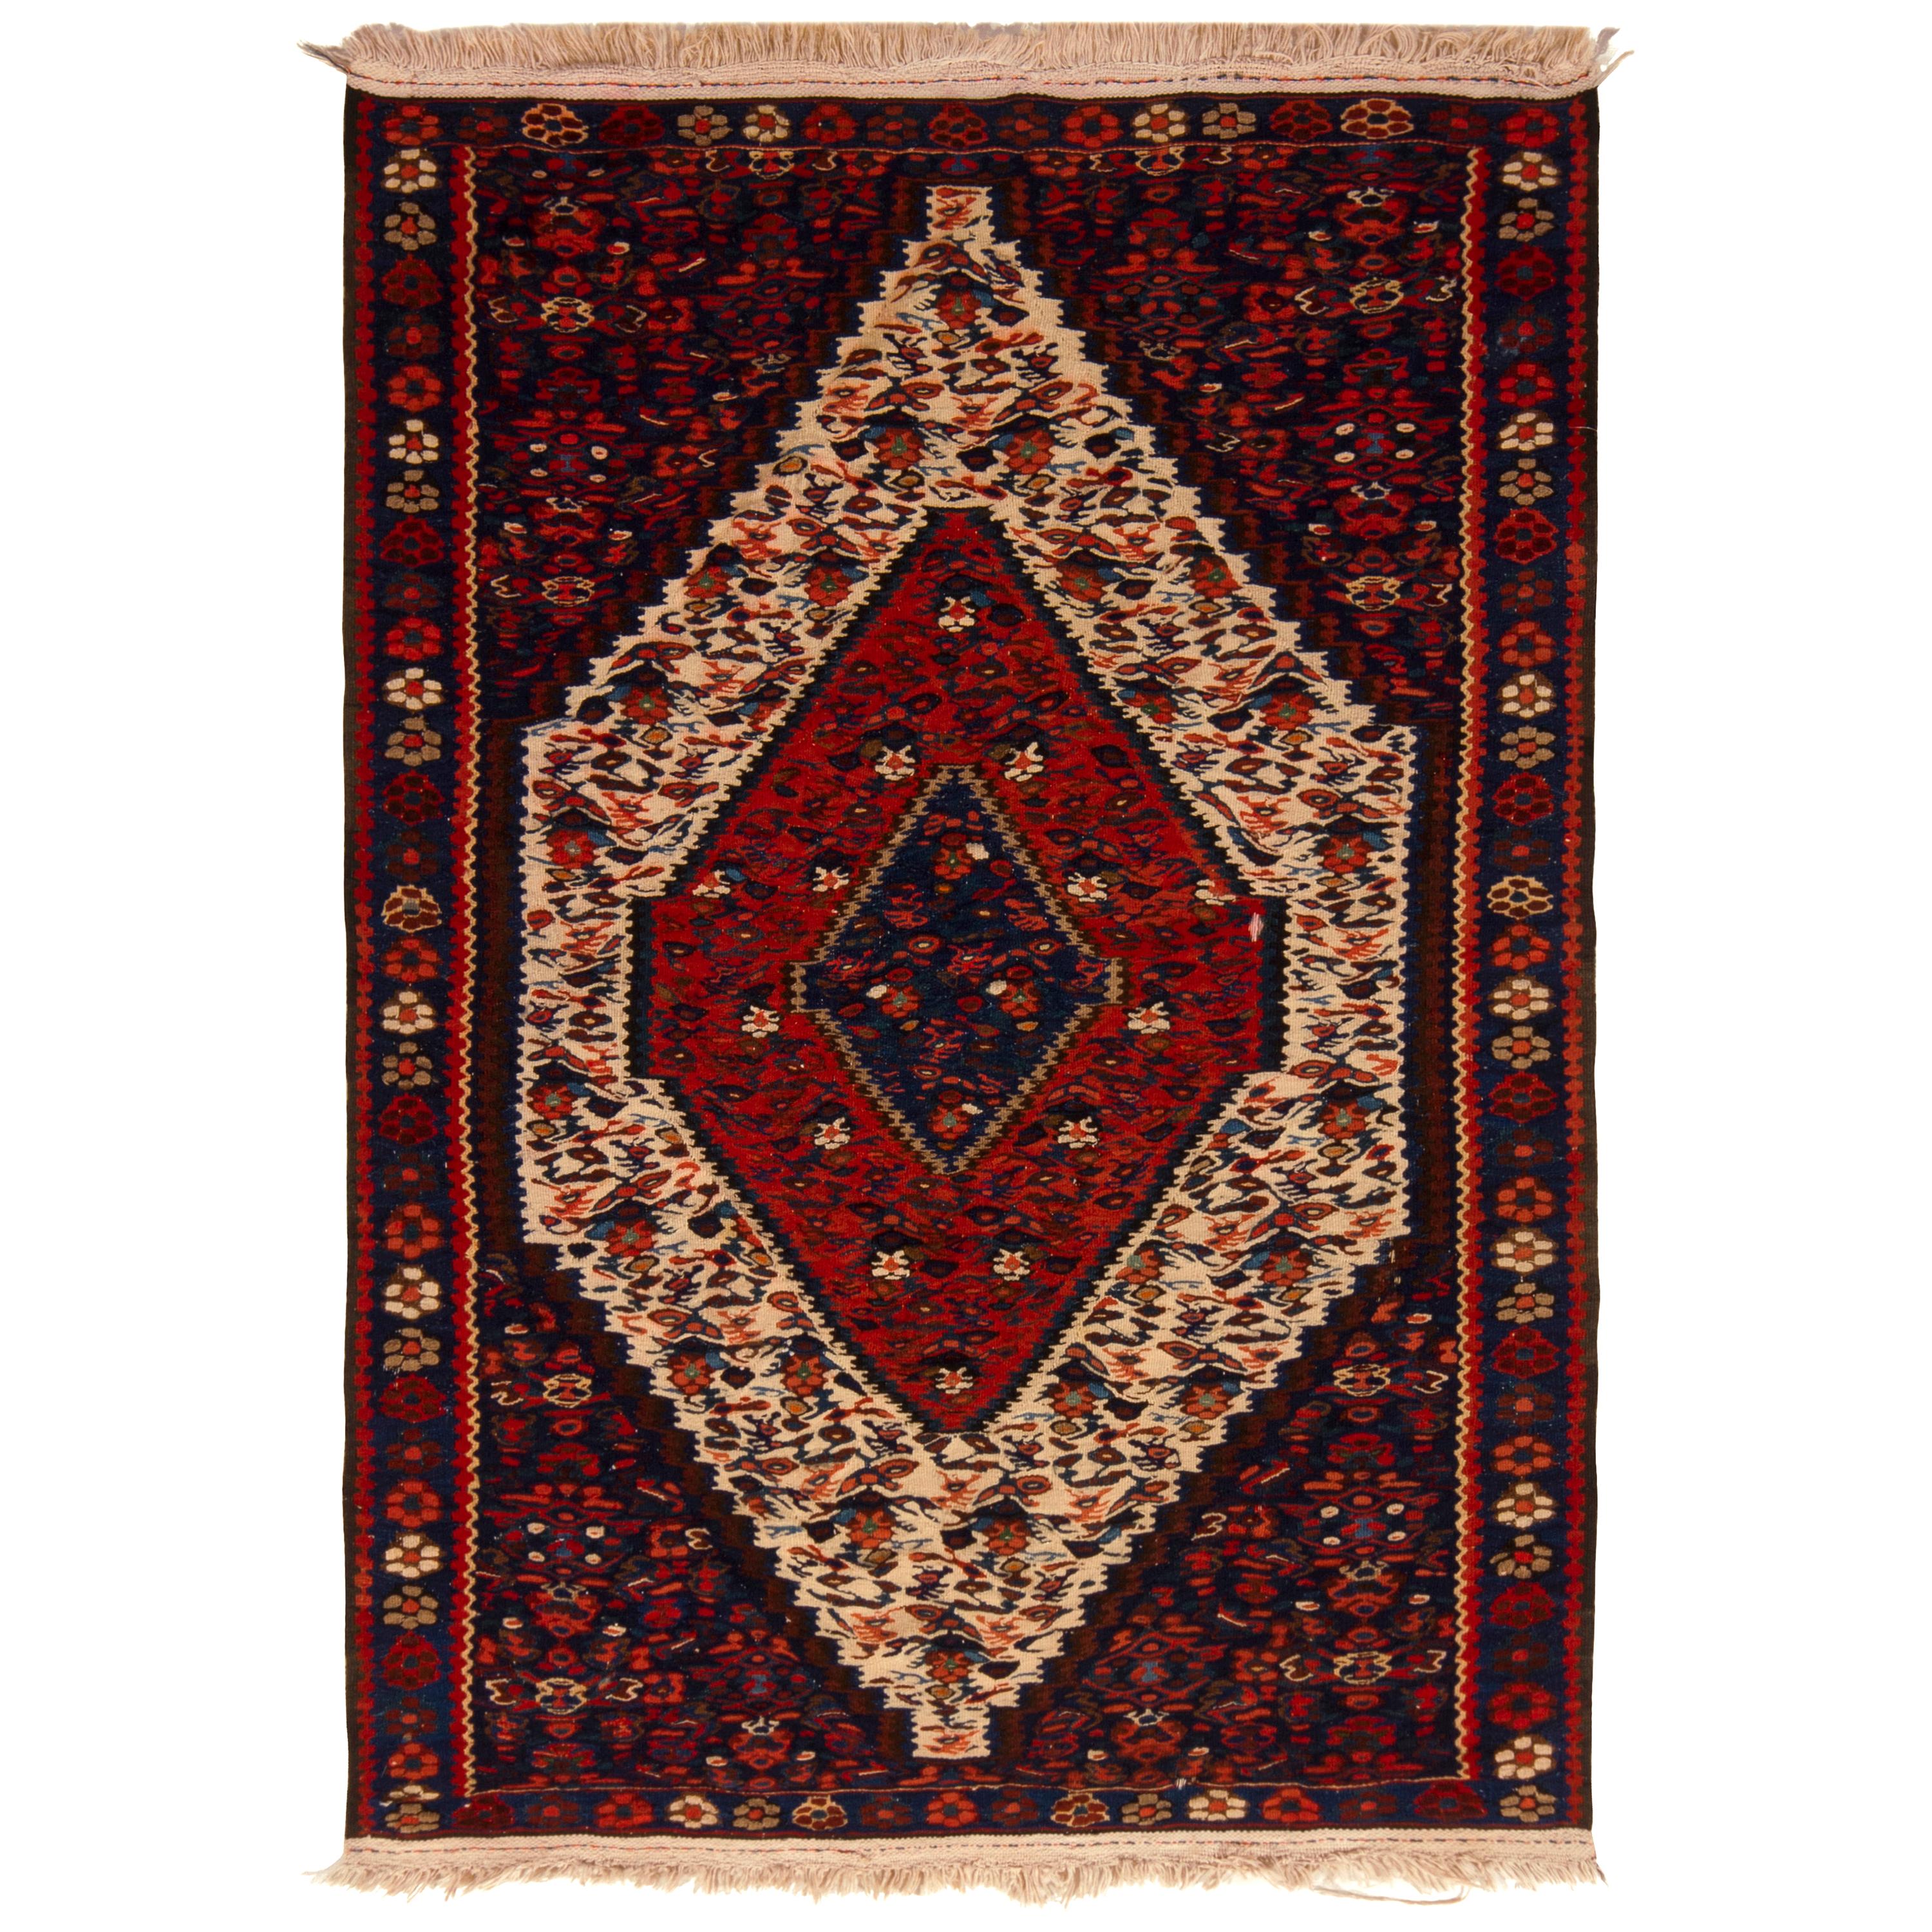 Midcentury Persian Kilim Rug Wool Red Cream Floral Flat-Weave by Rug & Kilim